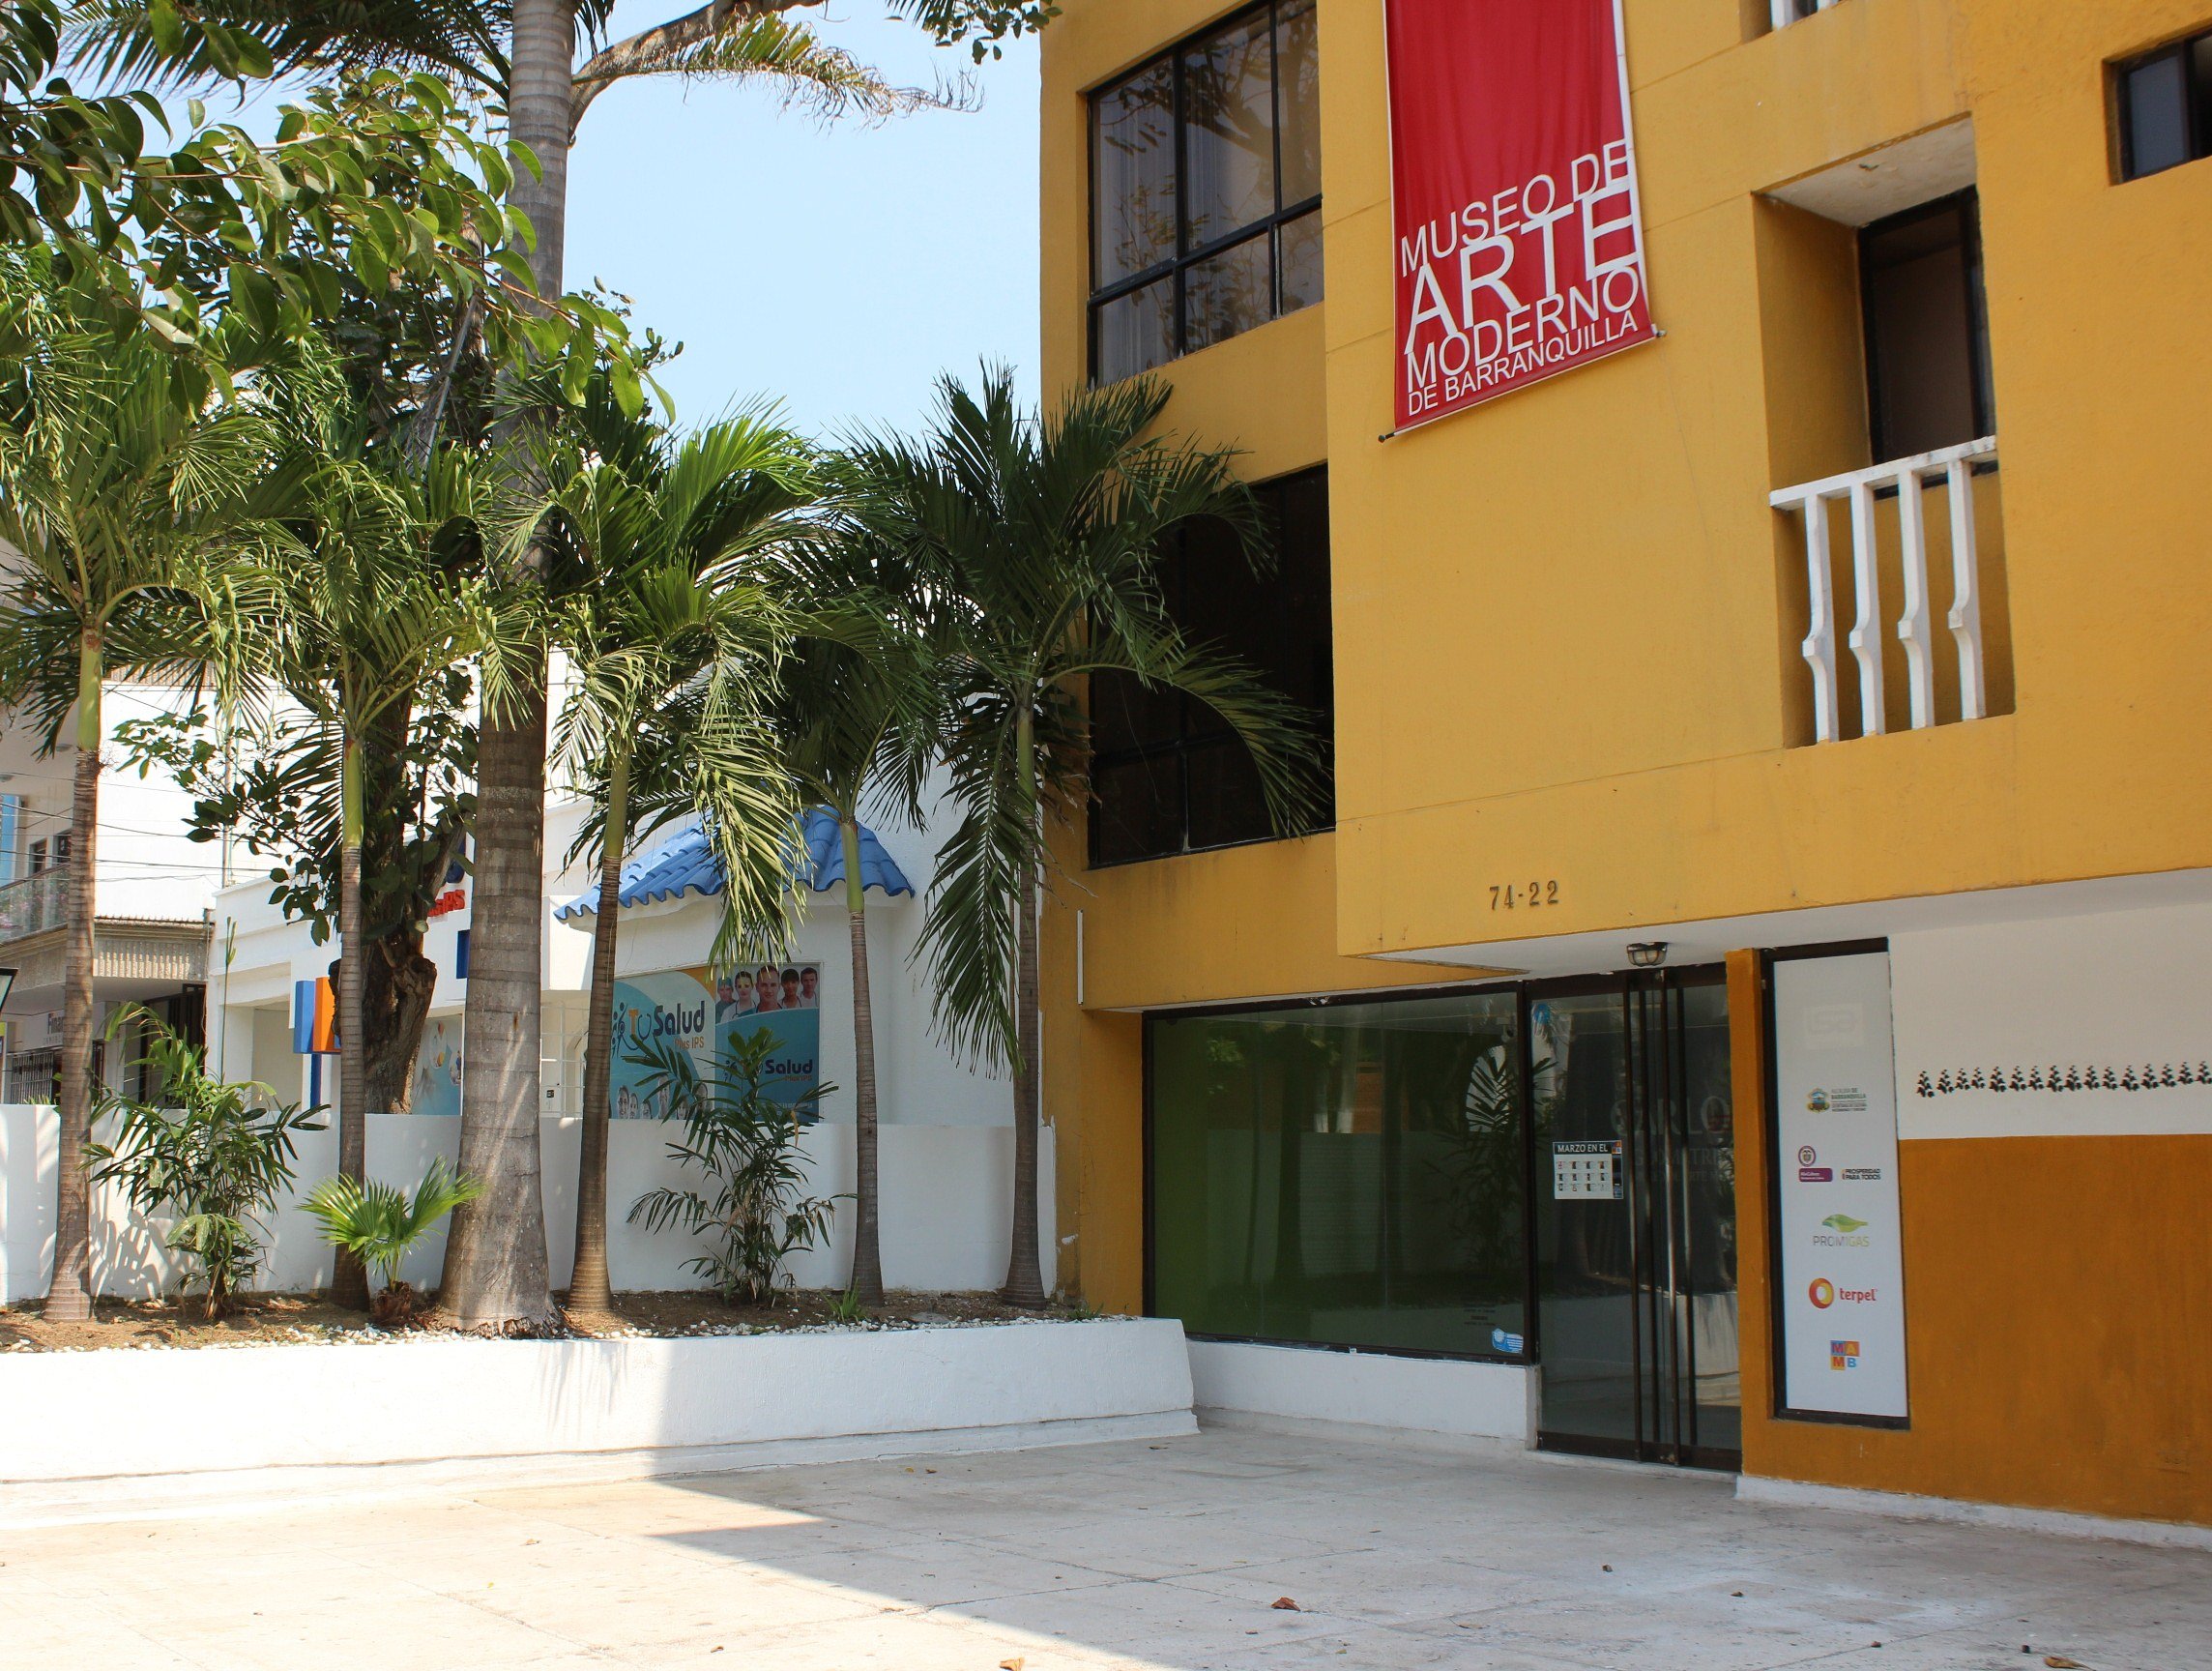 Museo de Arte Moderno de Barranquilla en un viaje a Colombia